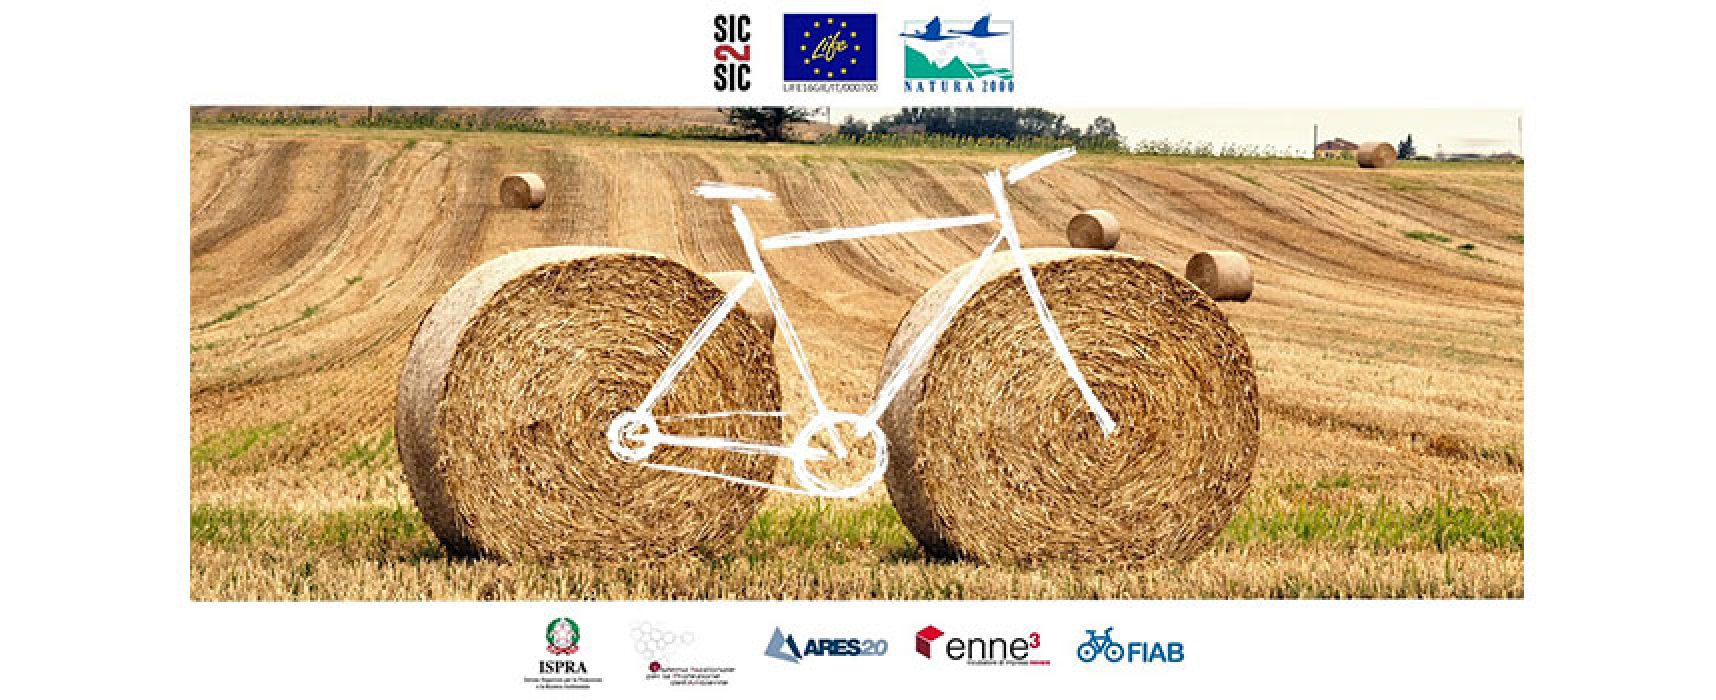 Seimila chilometri in bici per l’ambiente: il progetto Life Sic2sic fa tappa a Bisceglie